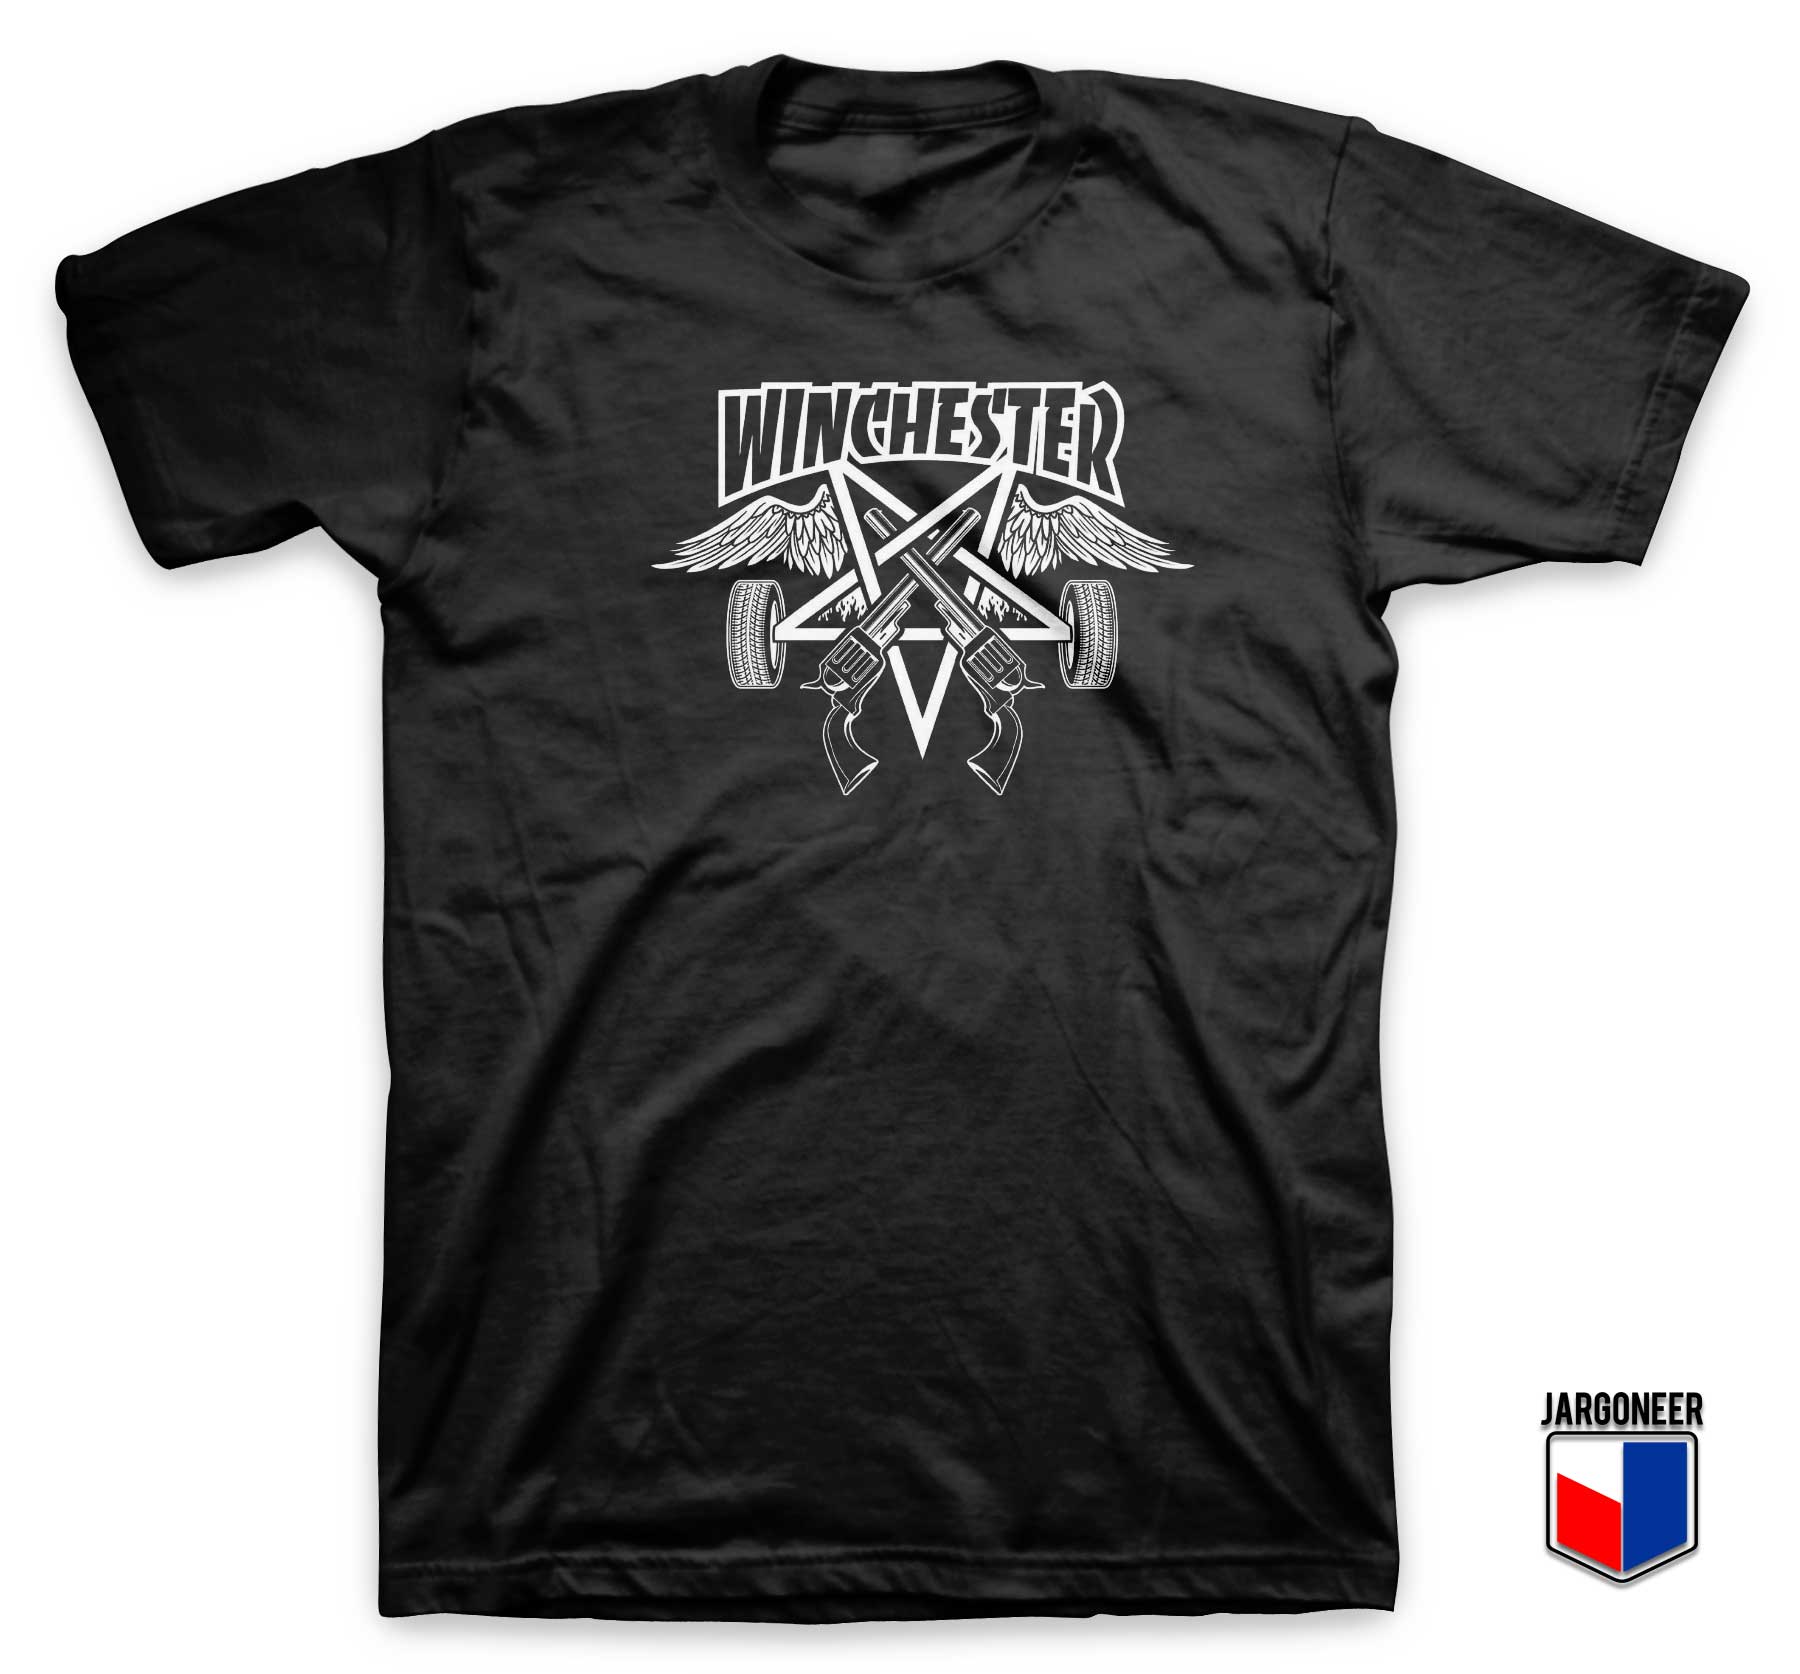 Winchester Logo T Shirt - Shop Unique Graphic Cool Shirt Designs